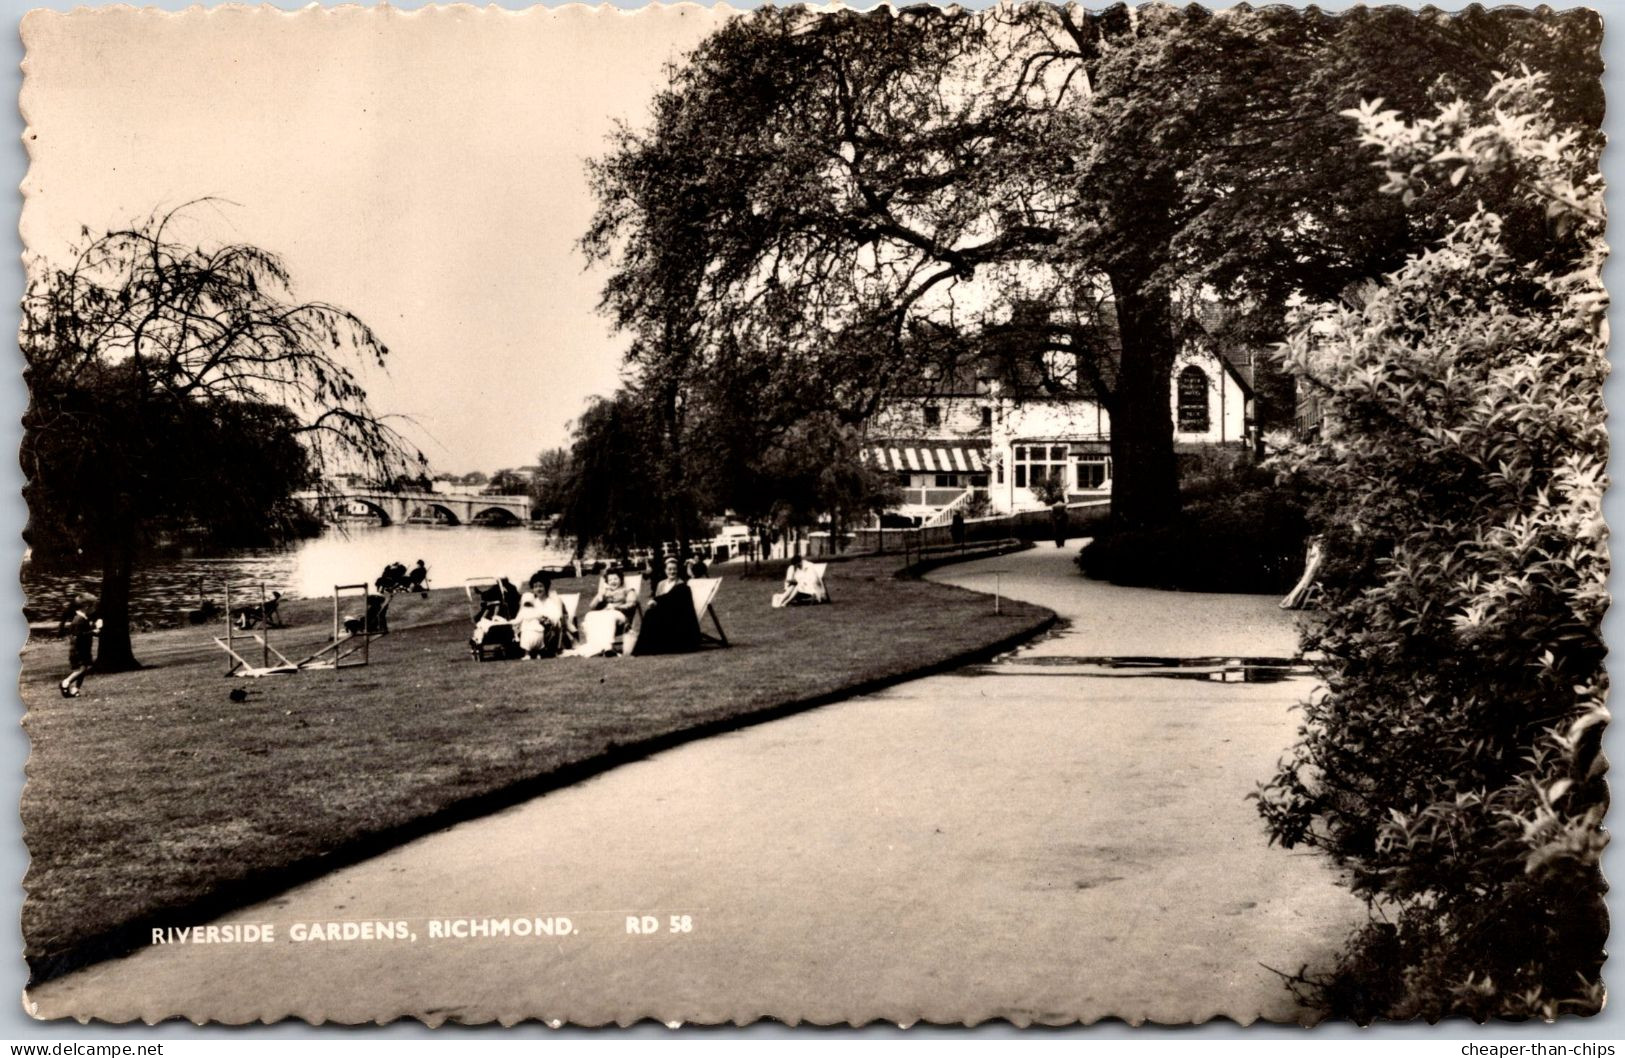 RICHMOND - Riverside Gardens - E. Coward & Co RD 58 - Surrey